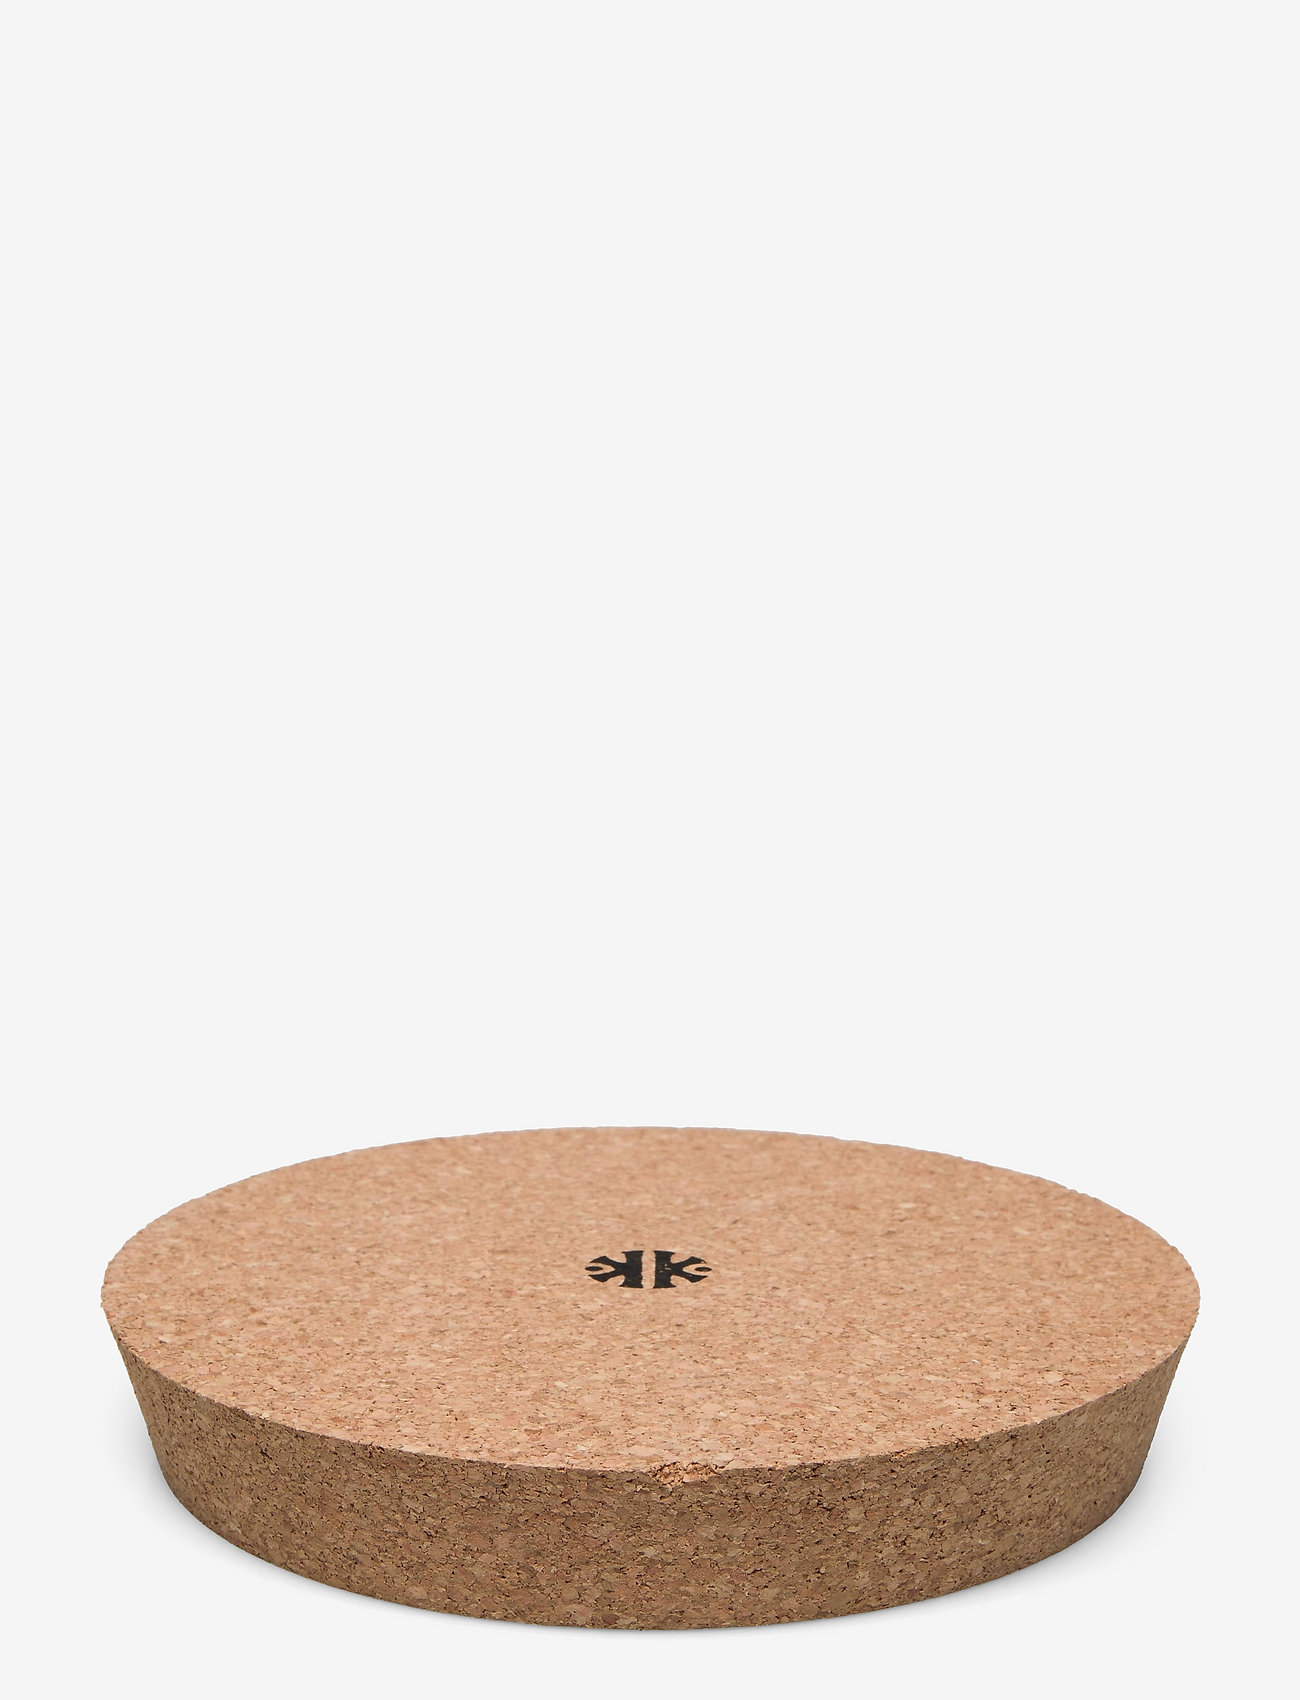 Knabstrup Keramik - Cork lid - madalaimad hinnad - cork - 0